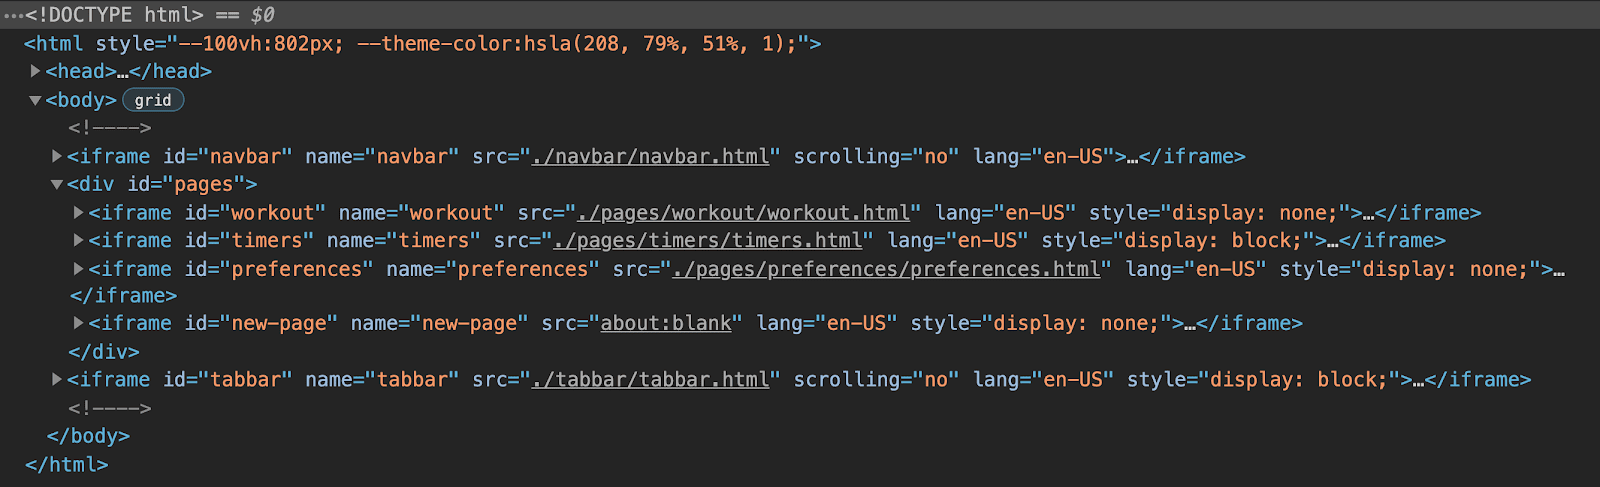 Tampilan Chrome DevTools dari struktur HTML aplikasi menunjukkan bahwa aplikasi tersebut terdiri dari enam iframe: satu untuk navbar, satu untuk tabbar, dan tiga yang dikelompokkan untuk setiap halaman aplikasi, dengan iframe placeholder akhir untuk halaman dinamis.